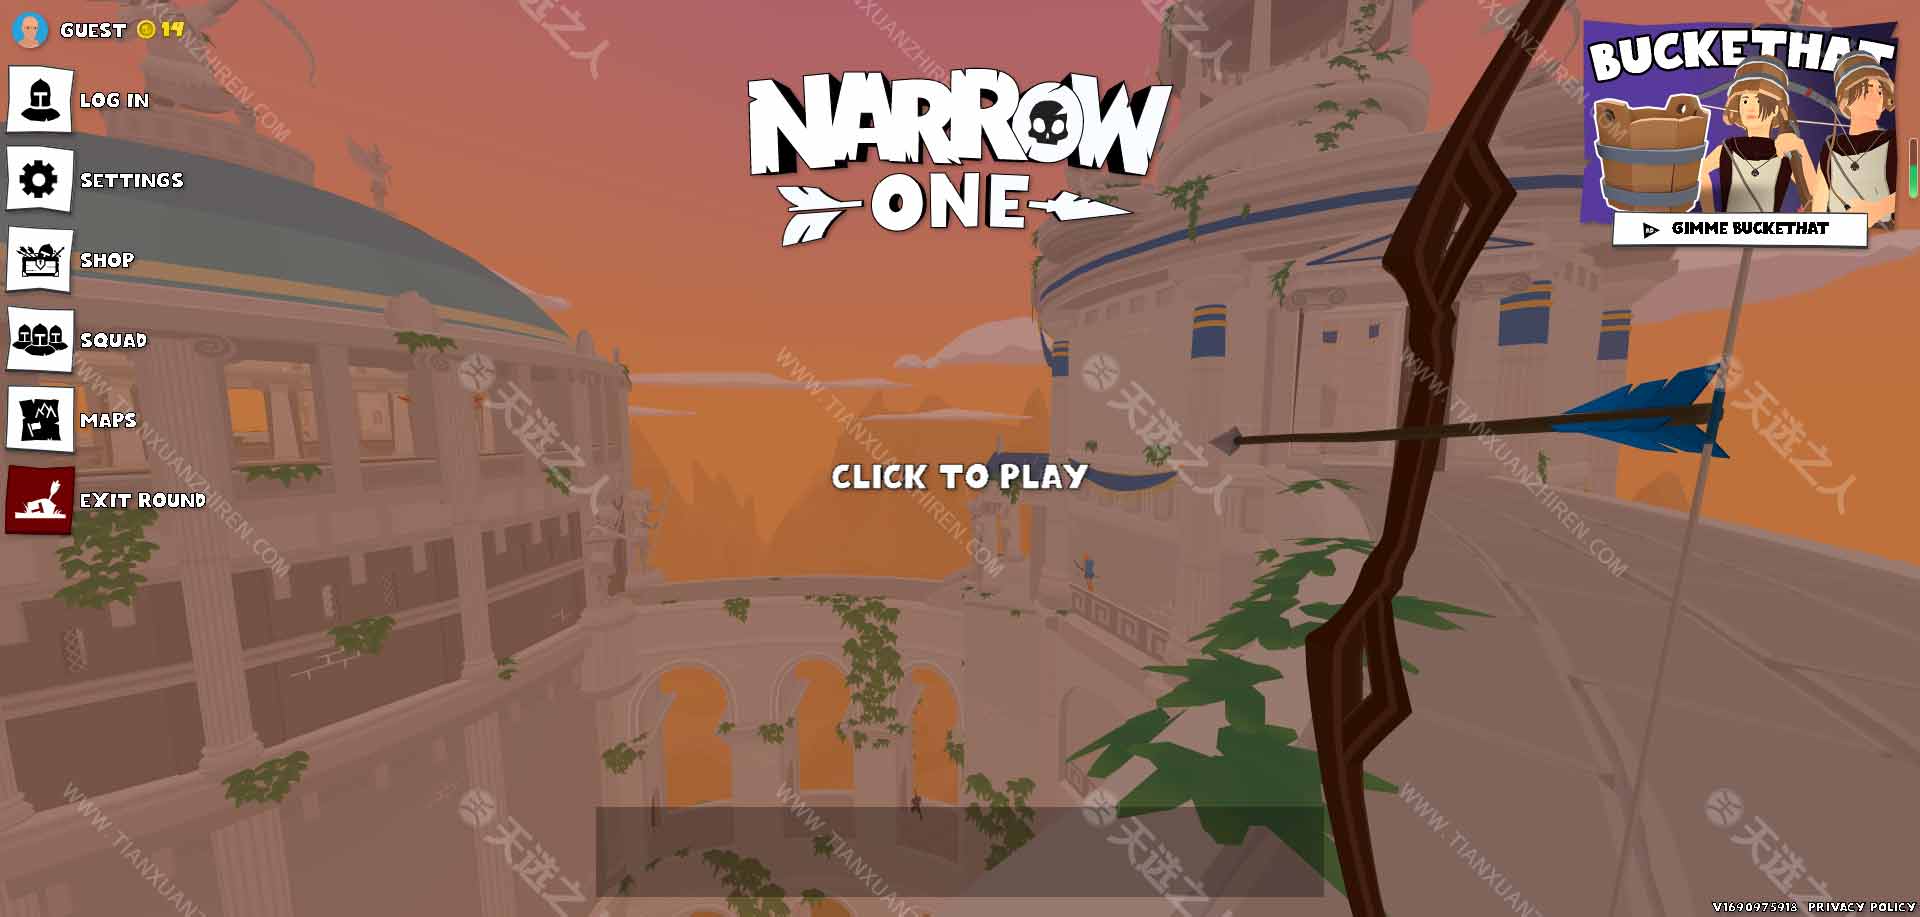 简单复古射箭小游戏-Narrow One-在线多人联机对战射箭小游戏